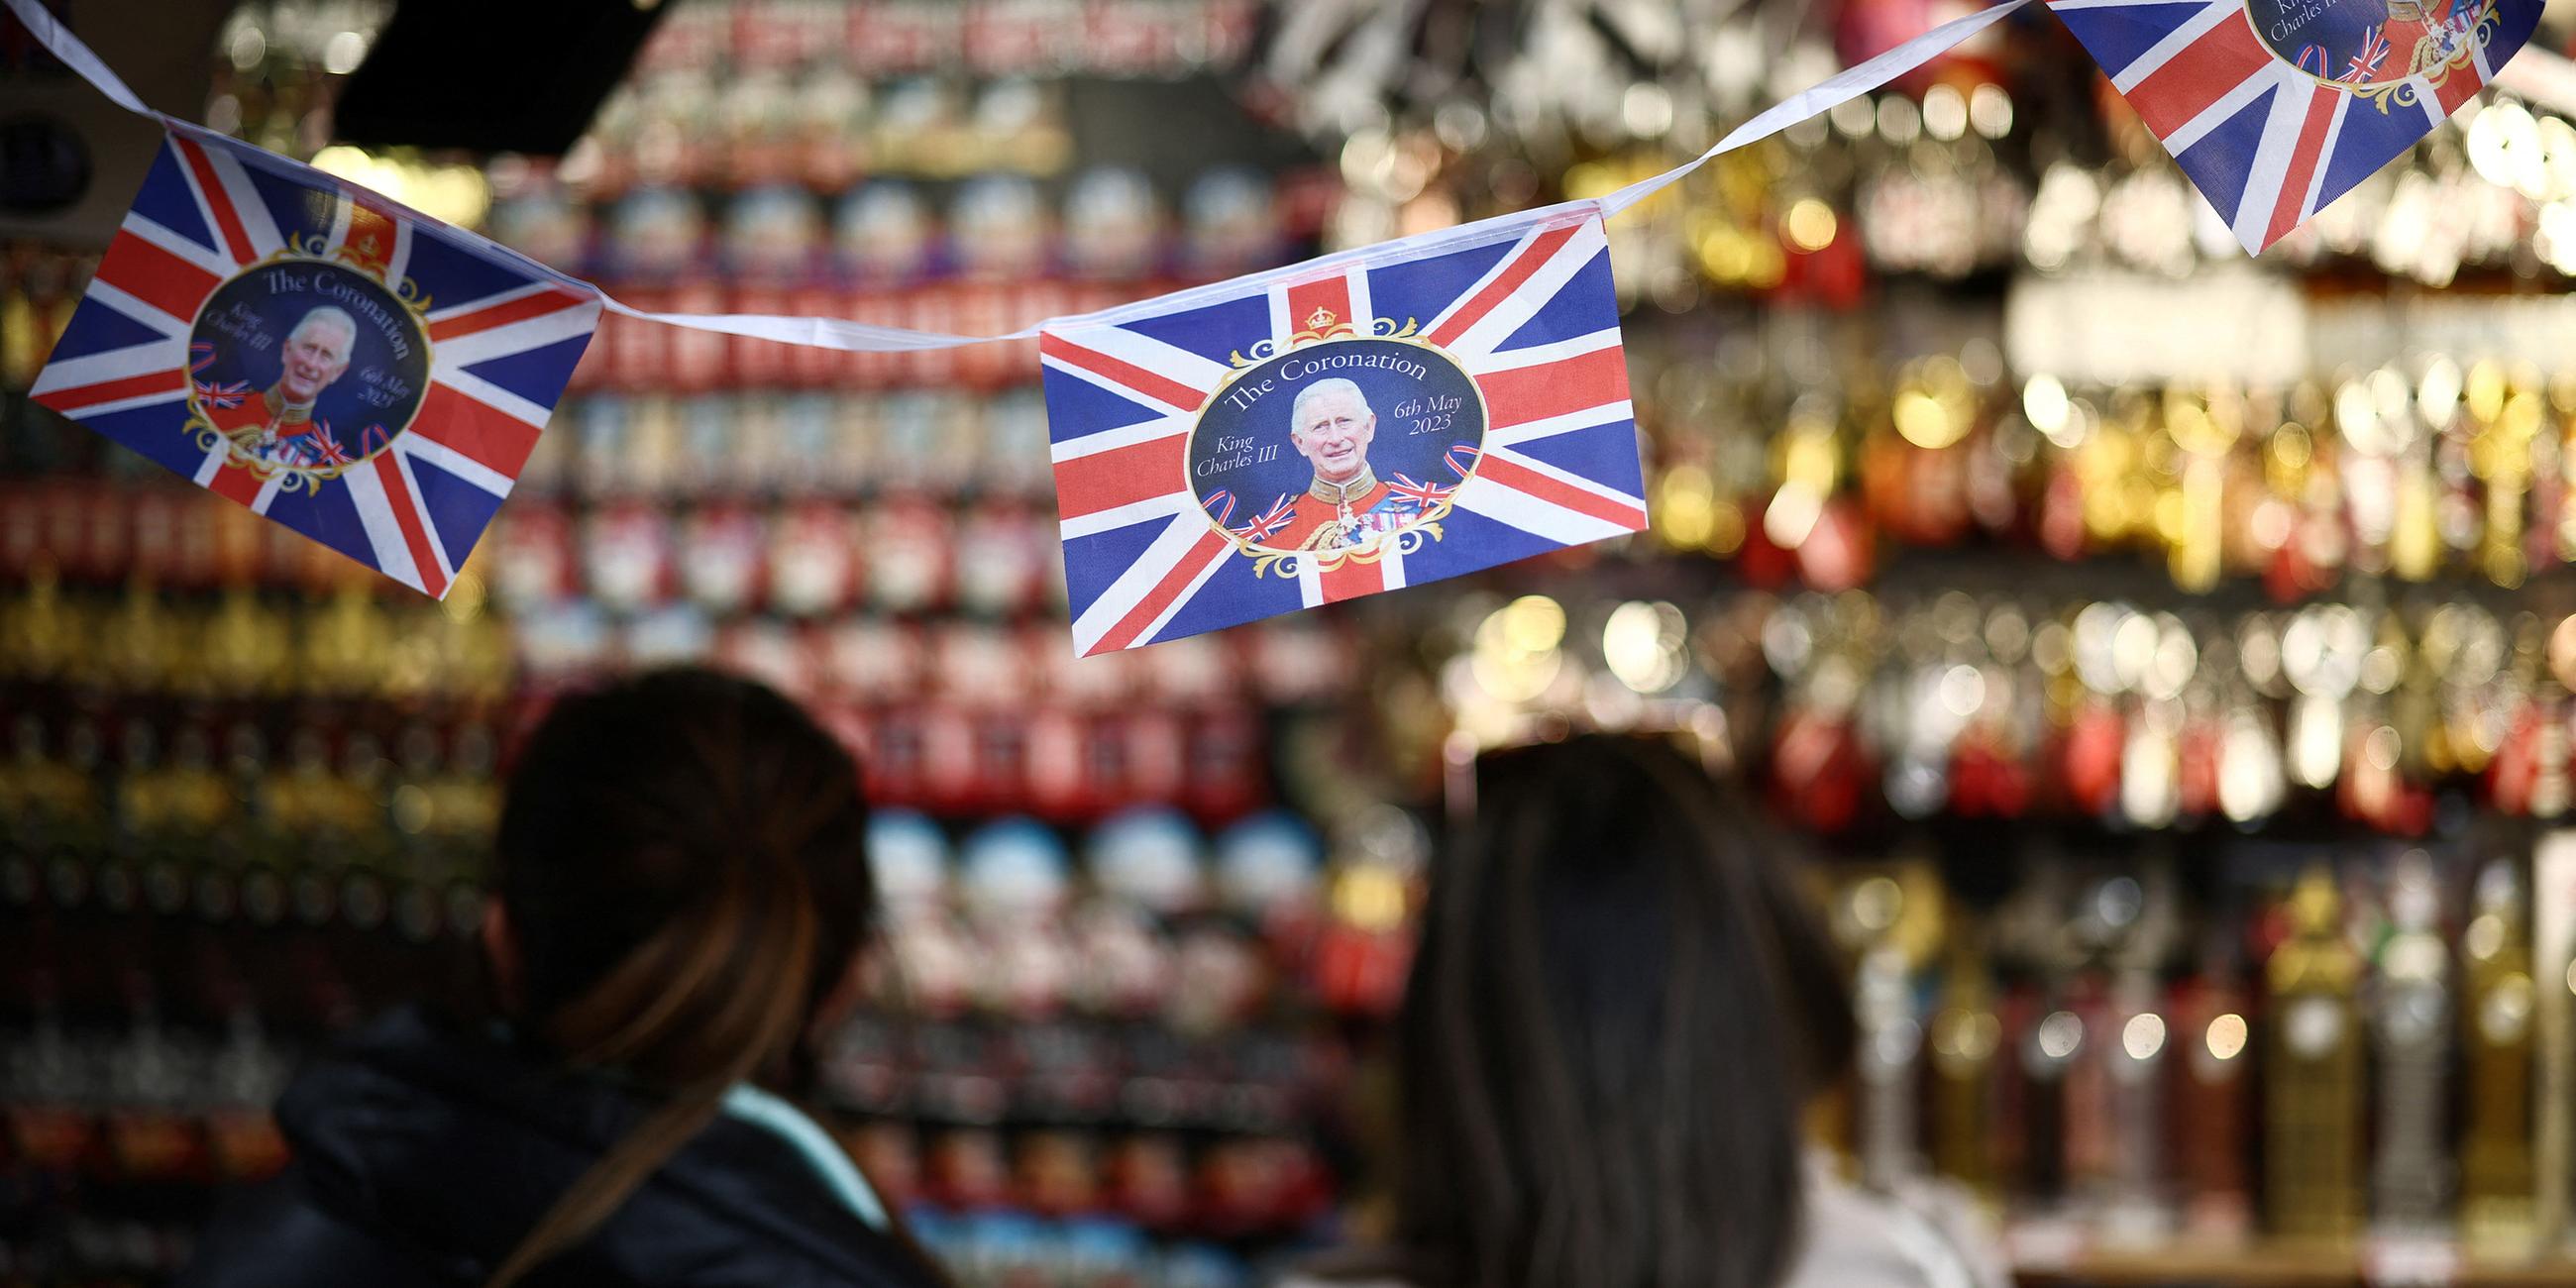 Menschen stöbern in einem Souvenir-Kiosk, der Artikel für die Krönung von König Karl III. ausstellt, in London.